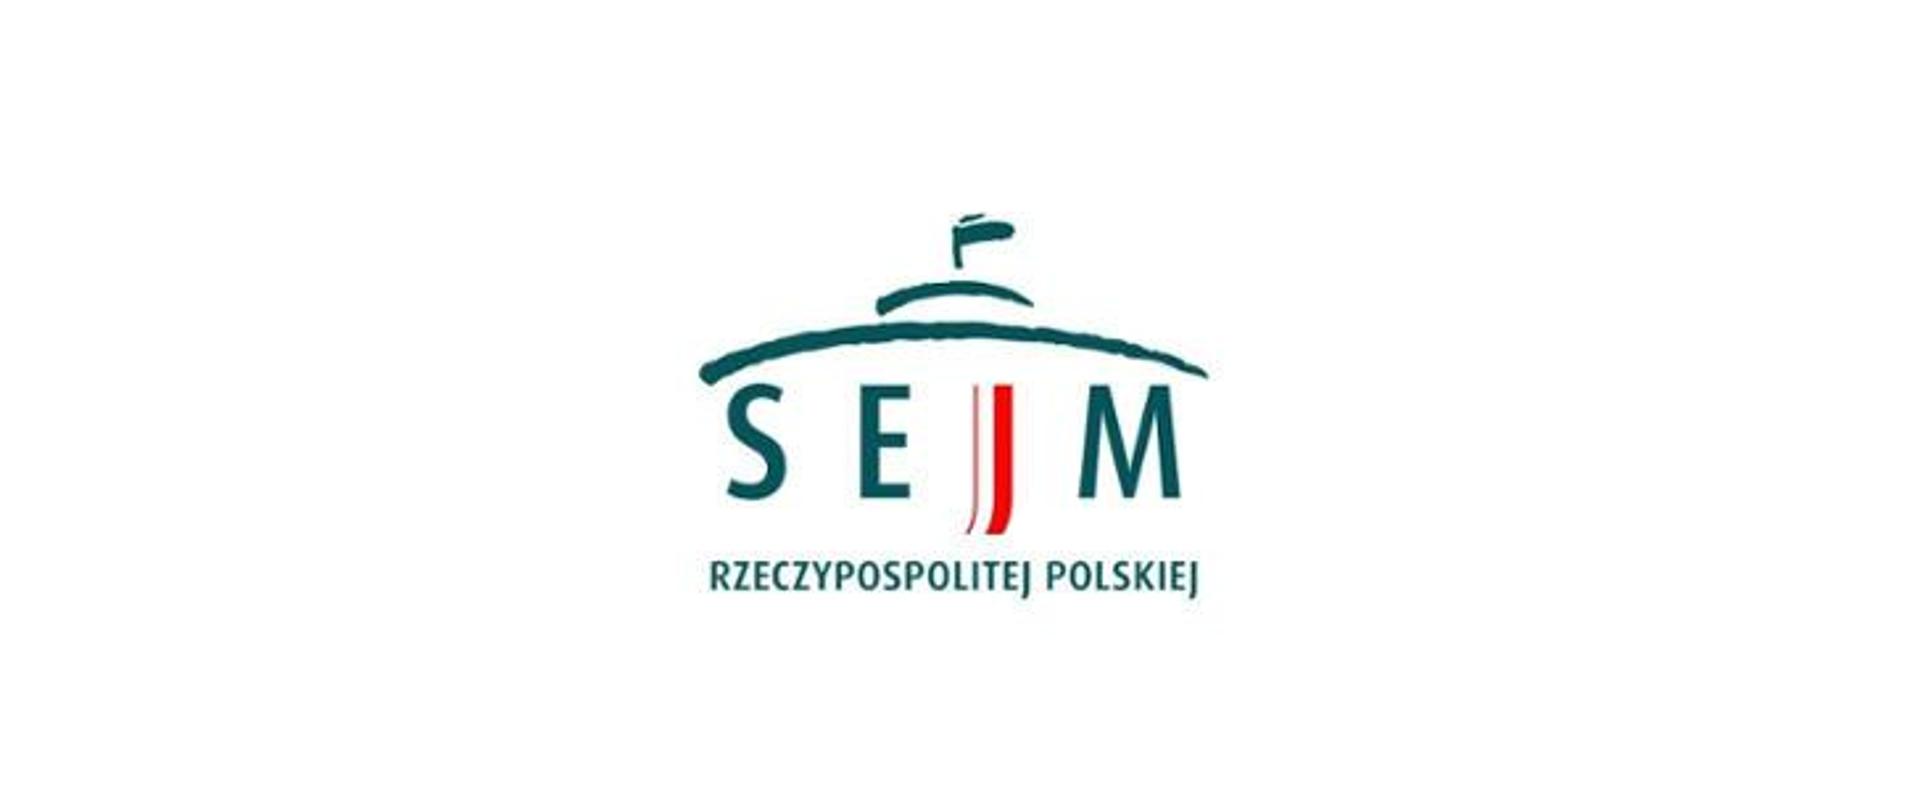 zdjęcie przedstawia logo Sejmu